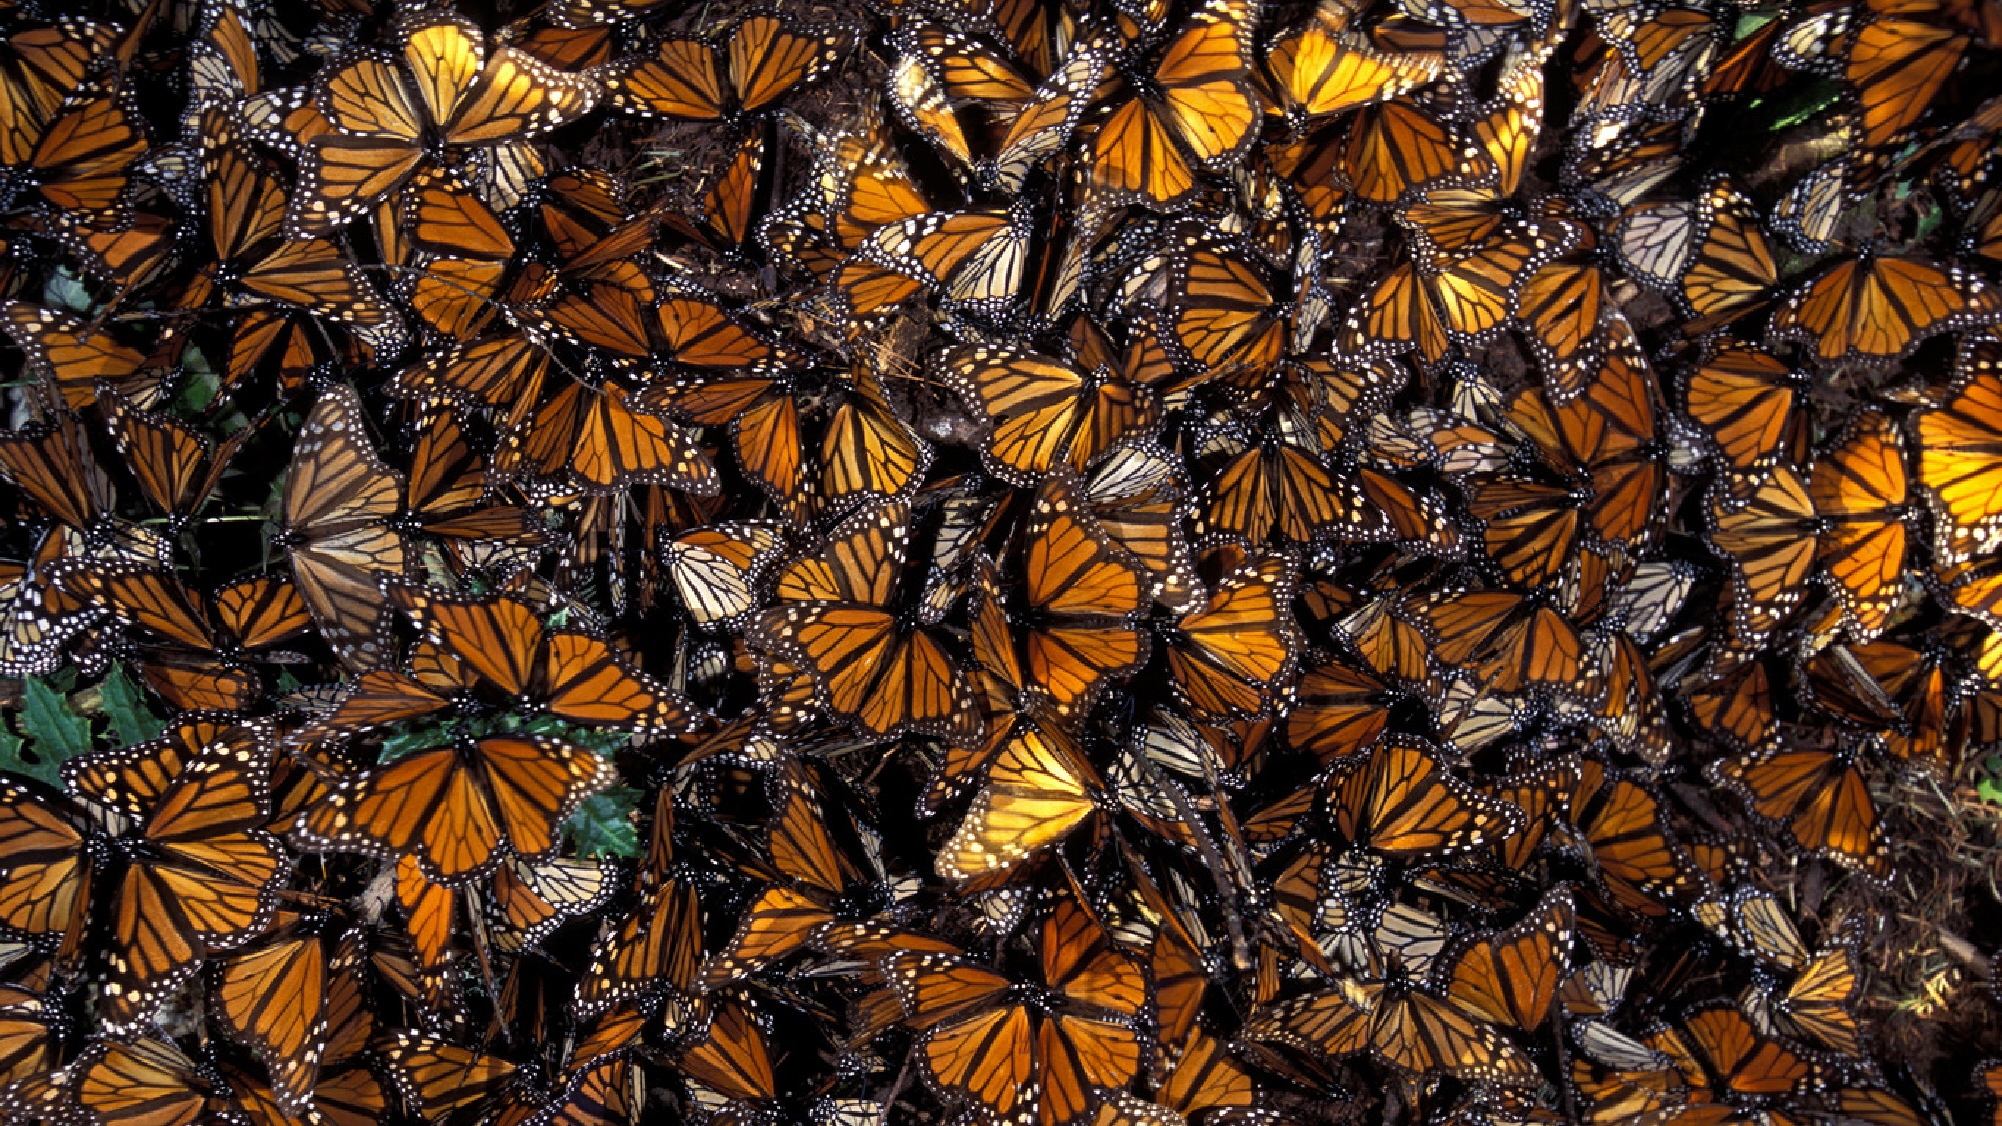 Бабочек легкая стая. Биосферный заповедник бабочки Монарх. Биосферный заповедник бабочки Монарх Мексика. Бабочки монархи в Мексике. Миграция бабочек монархов.